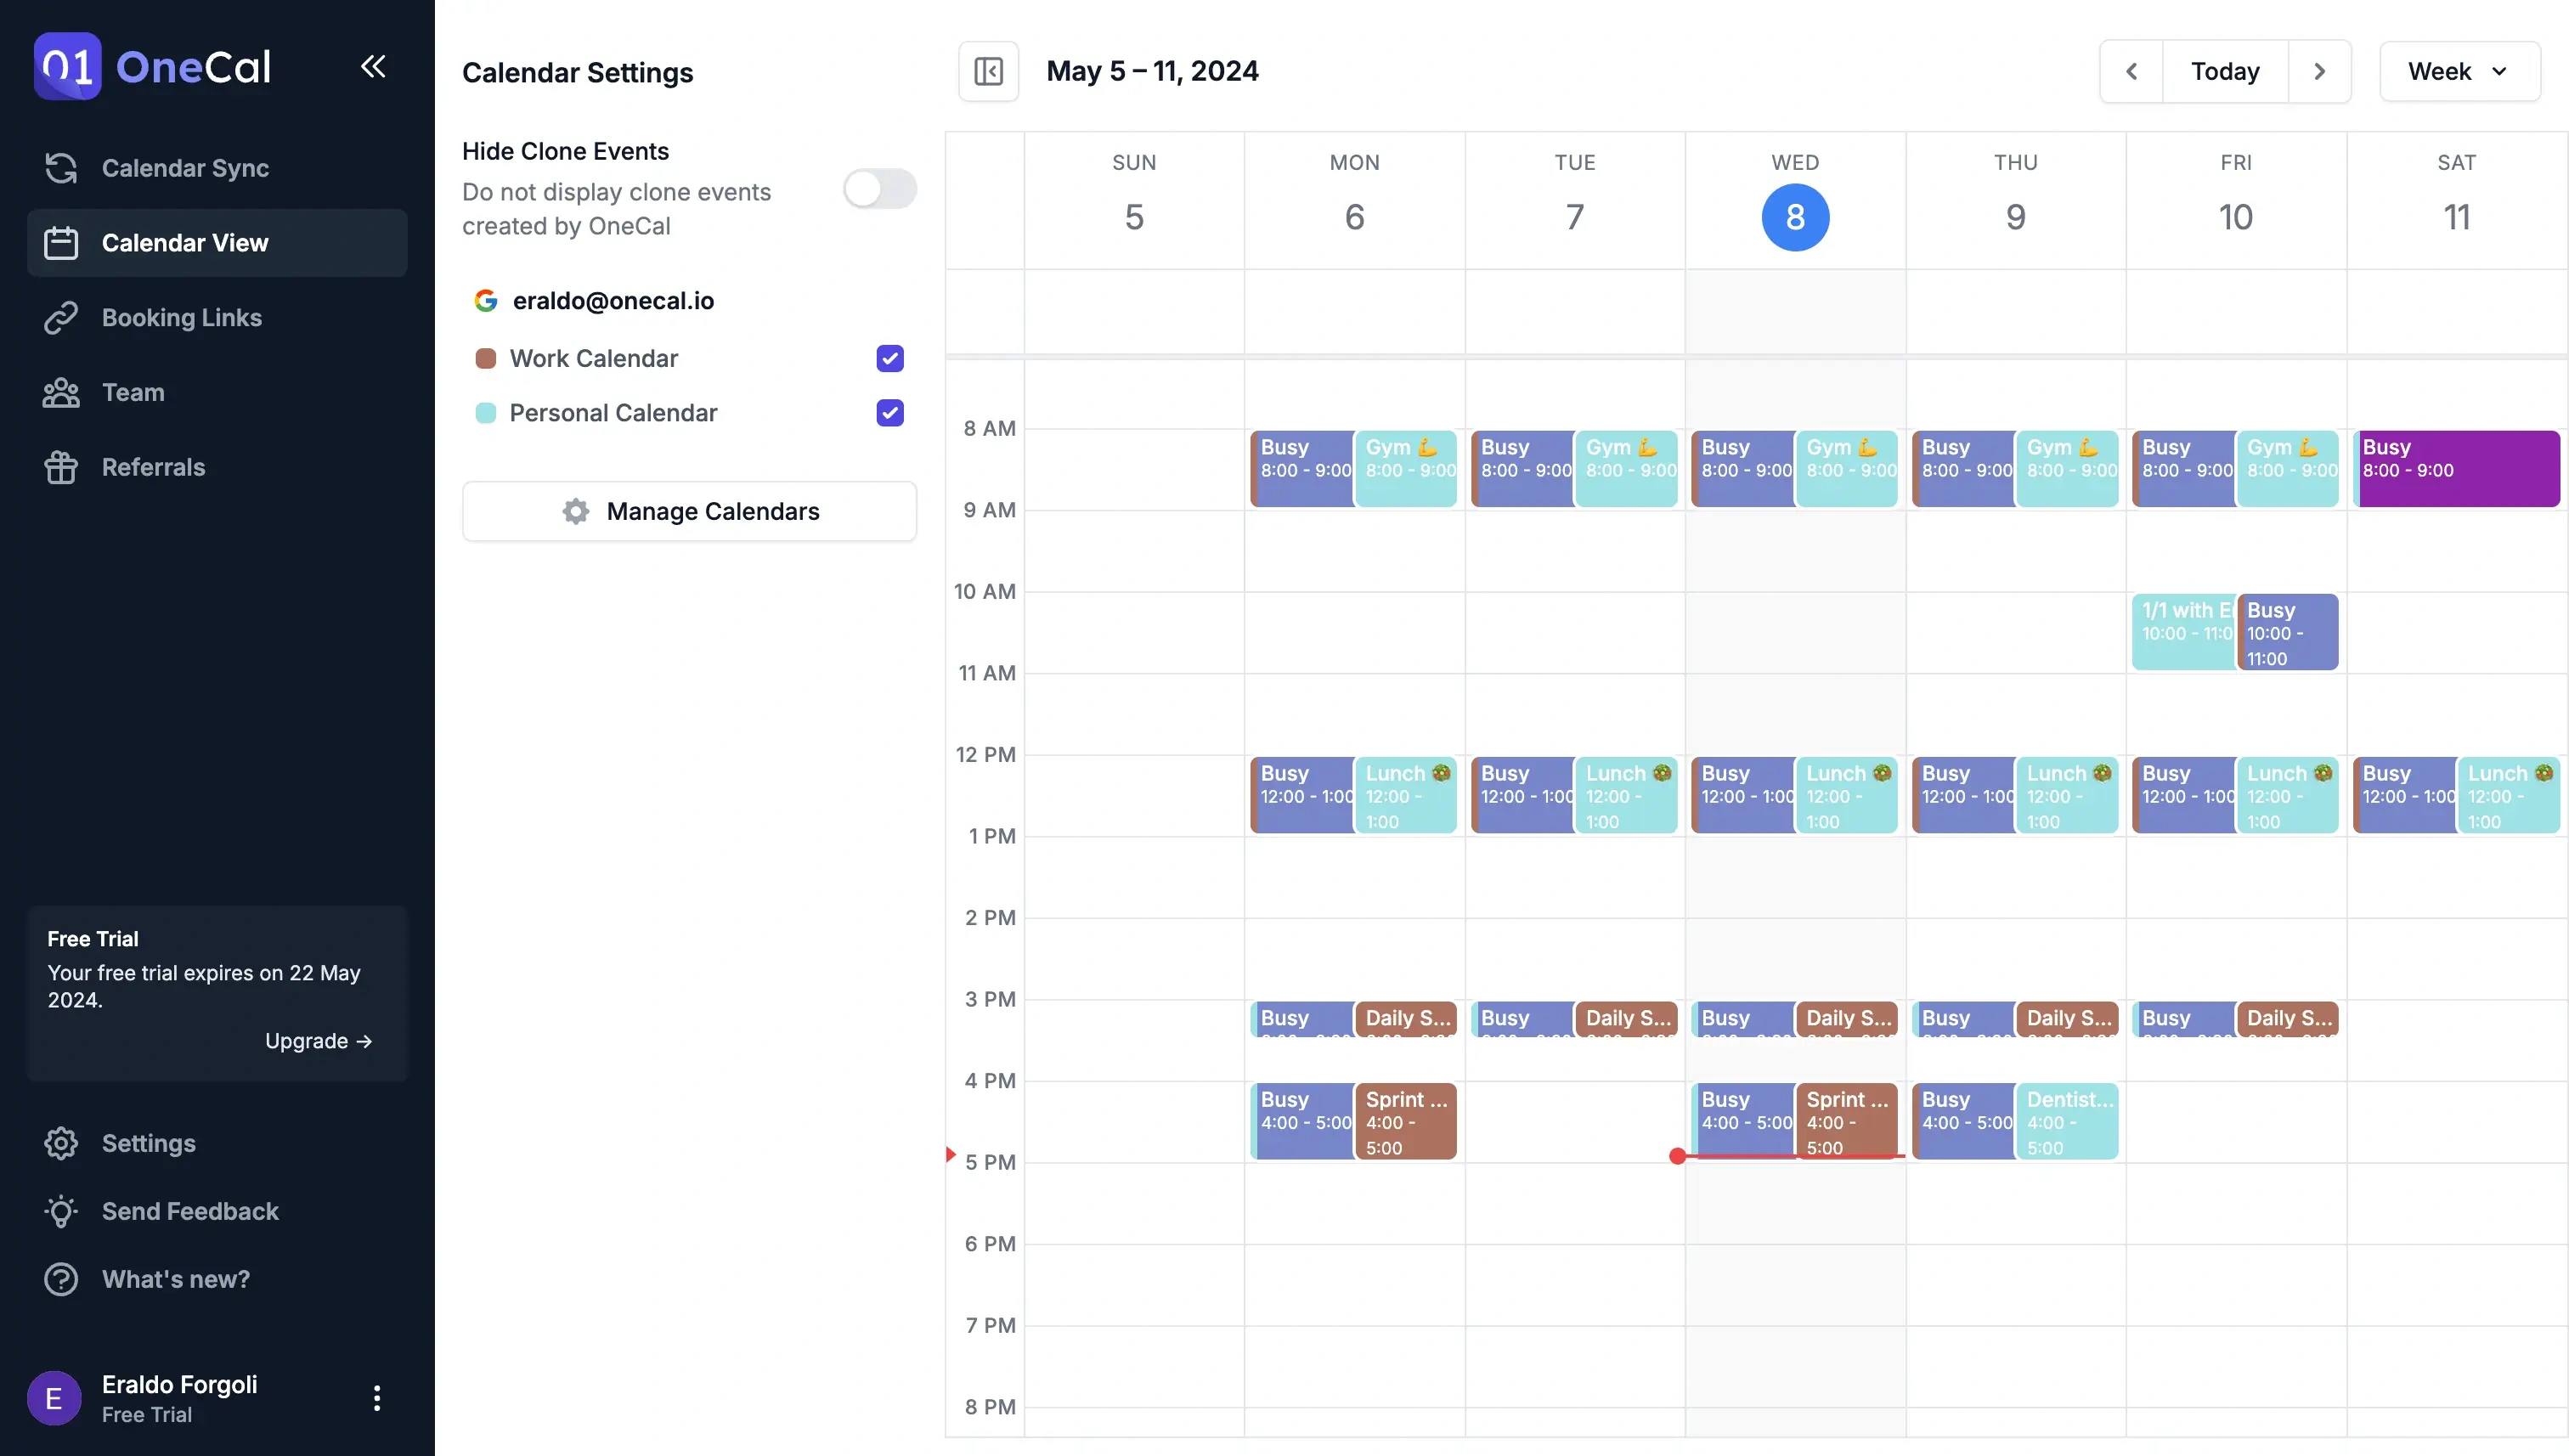 OneCal Calendar View - Merged Google Calendars